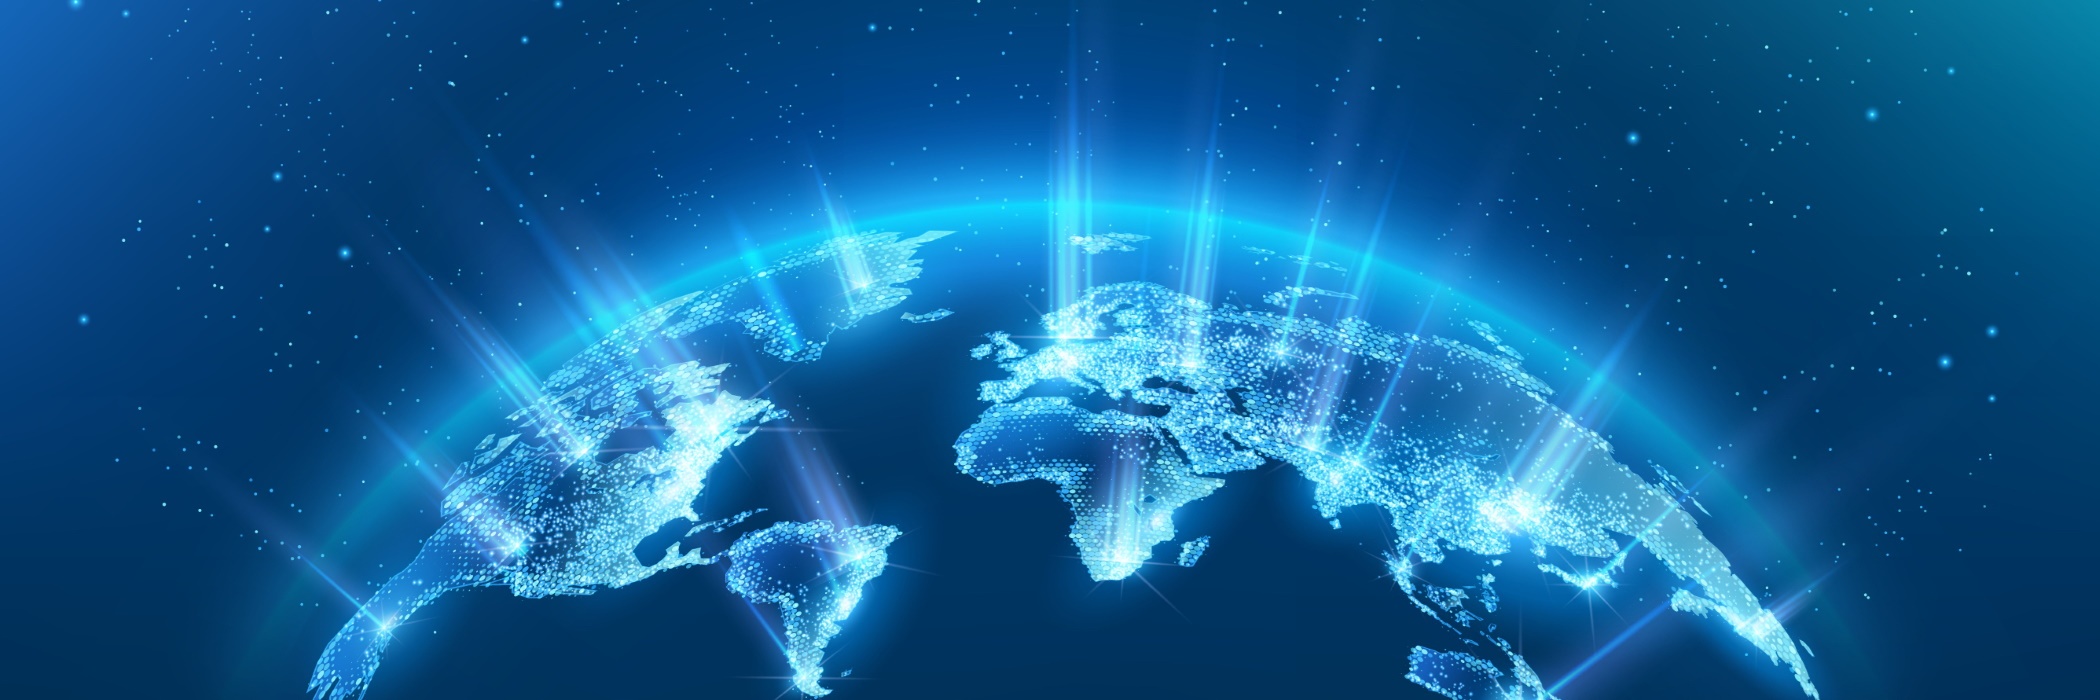 Dimerco's global network